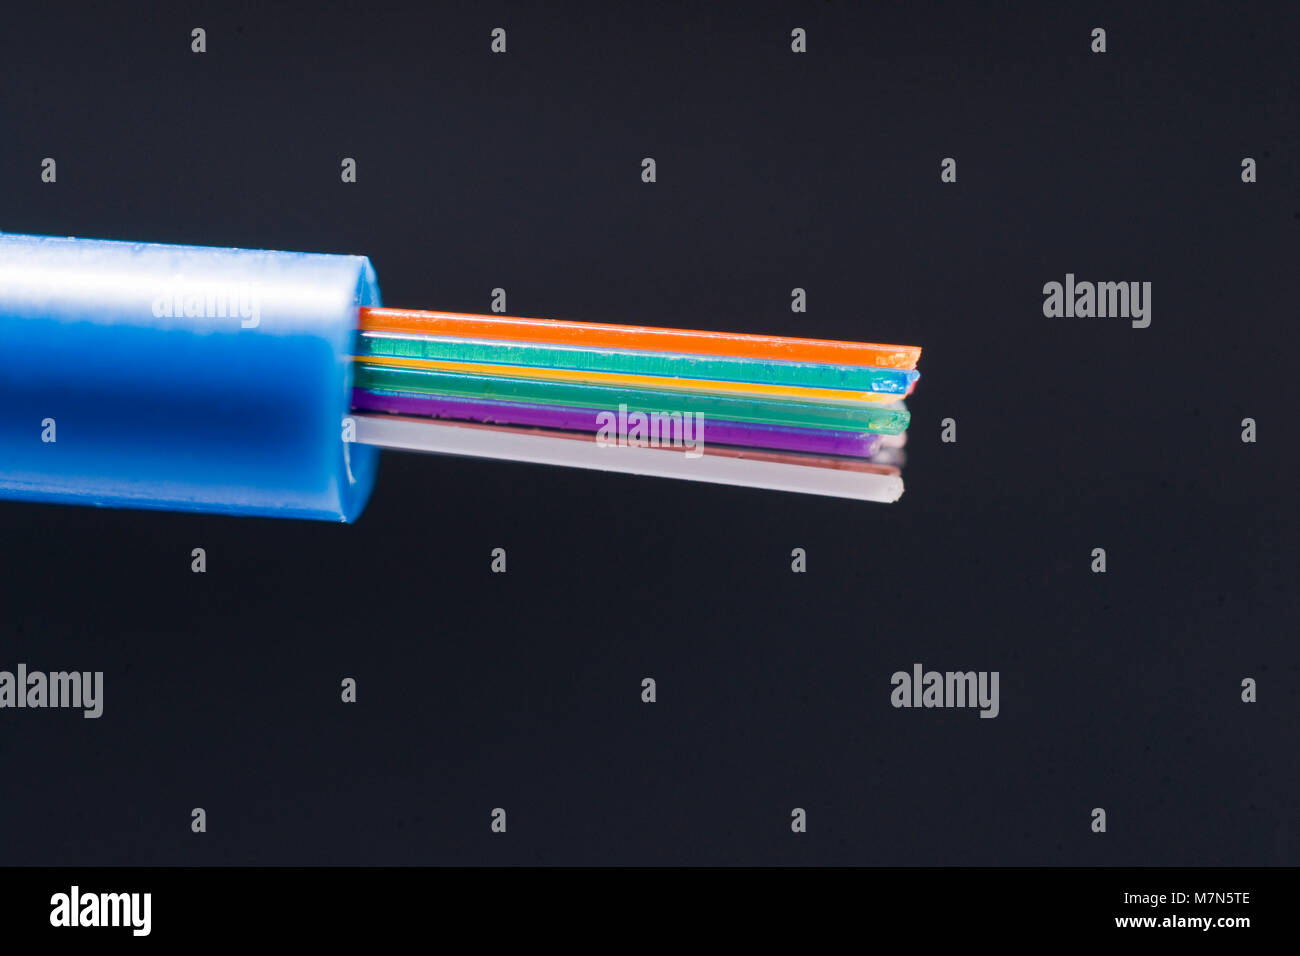 Con codice colore da 250 micron fibre ottiche sporgere di 3 mm tubo di buffer Foto Stock